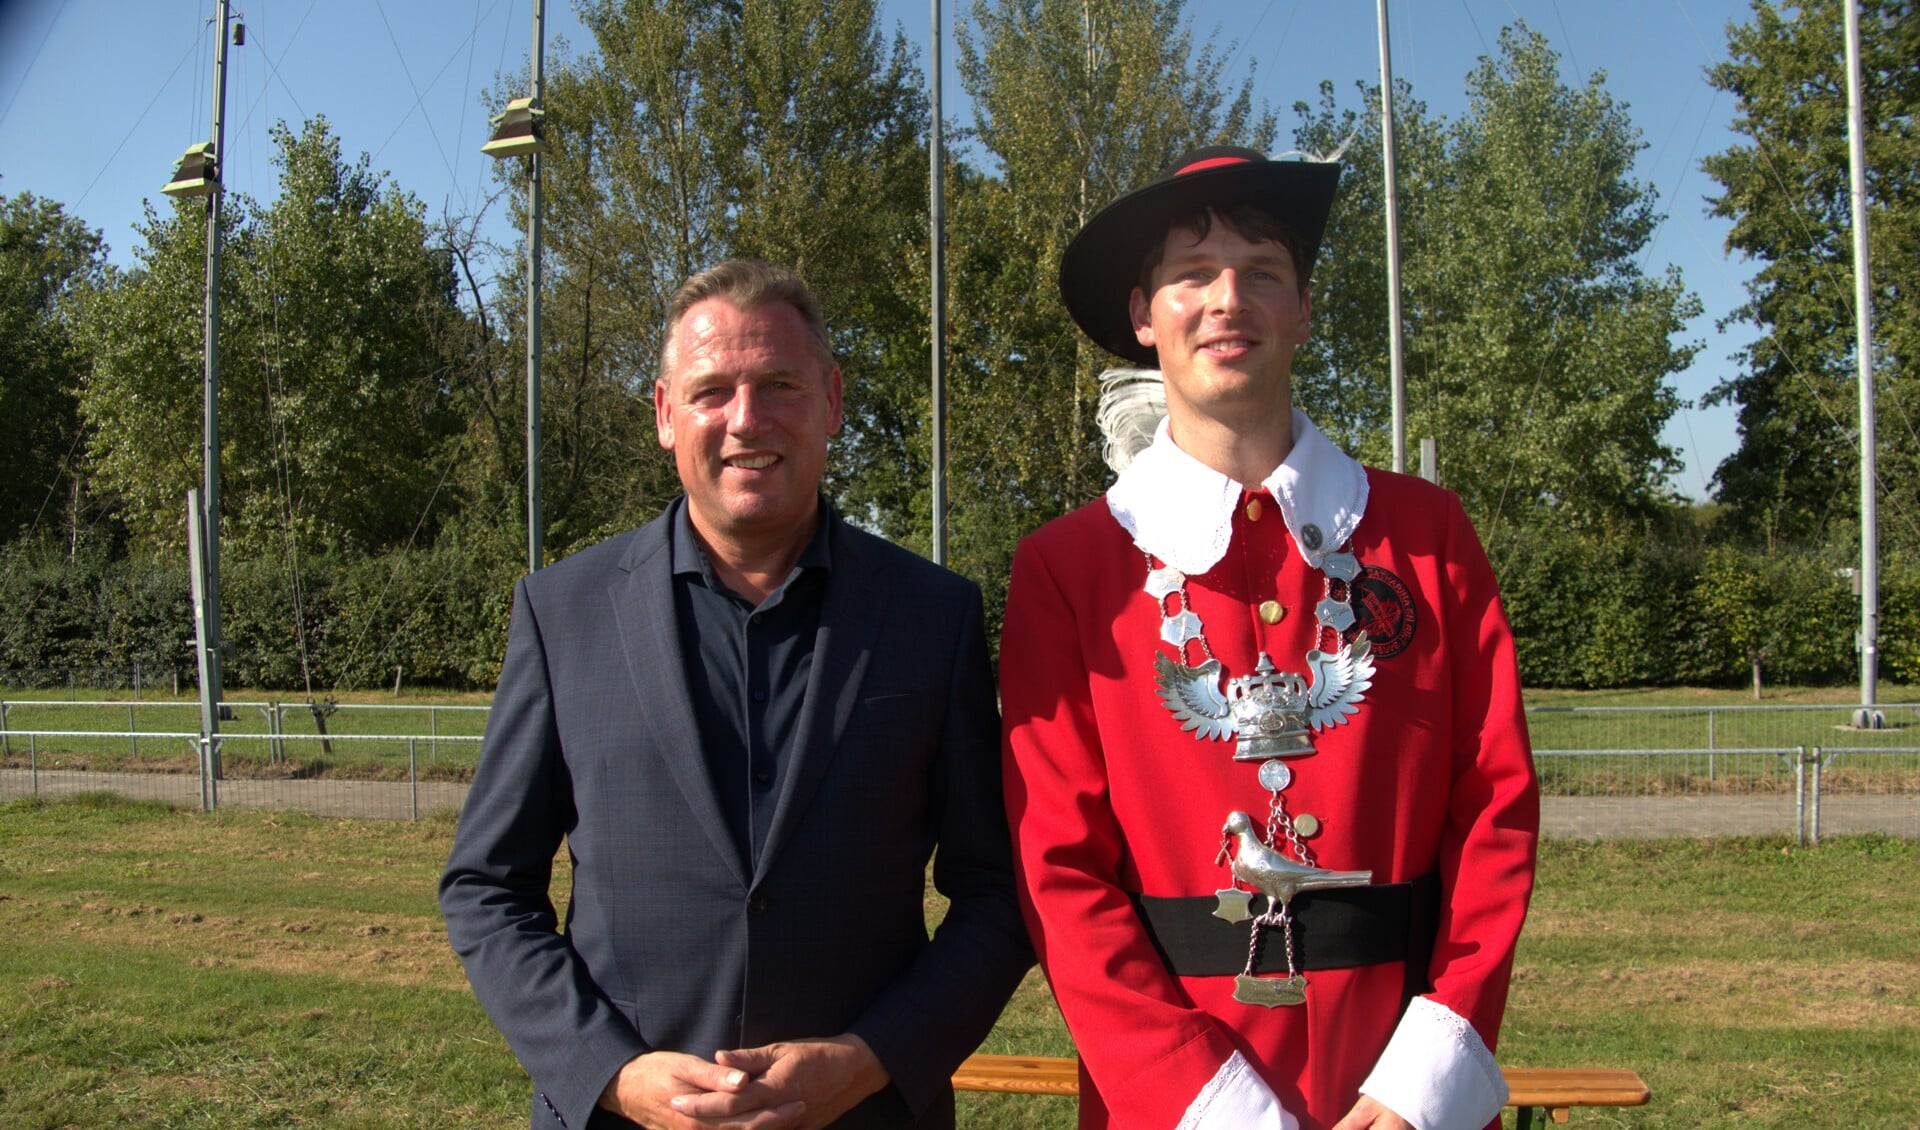 Gildekoning Willem Keeris met naast hem Jos van Bree, burgemeester van Geldrop-Mierlo. 